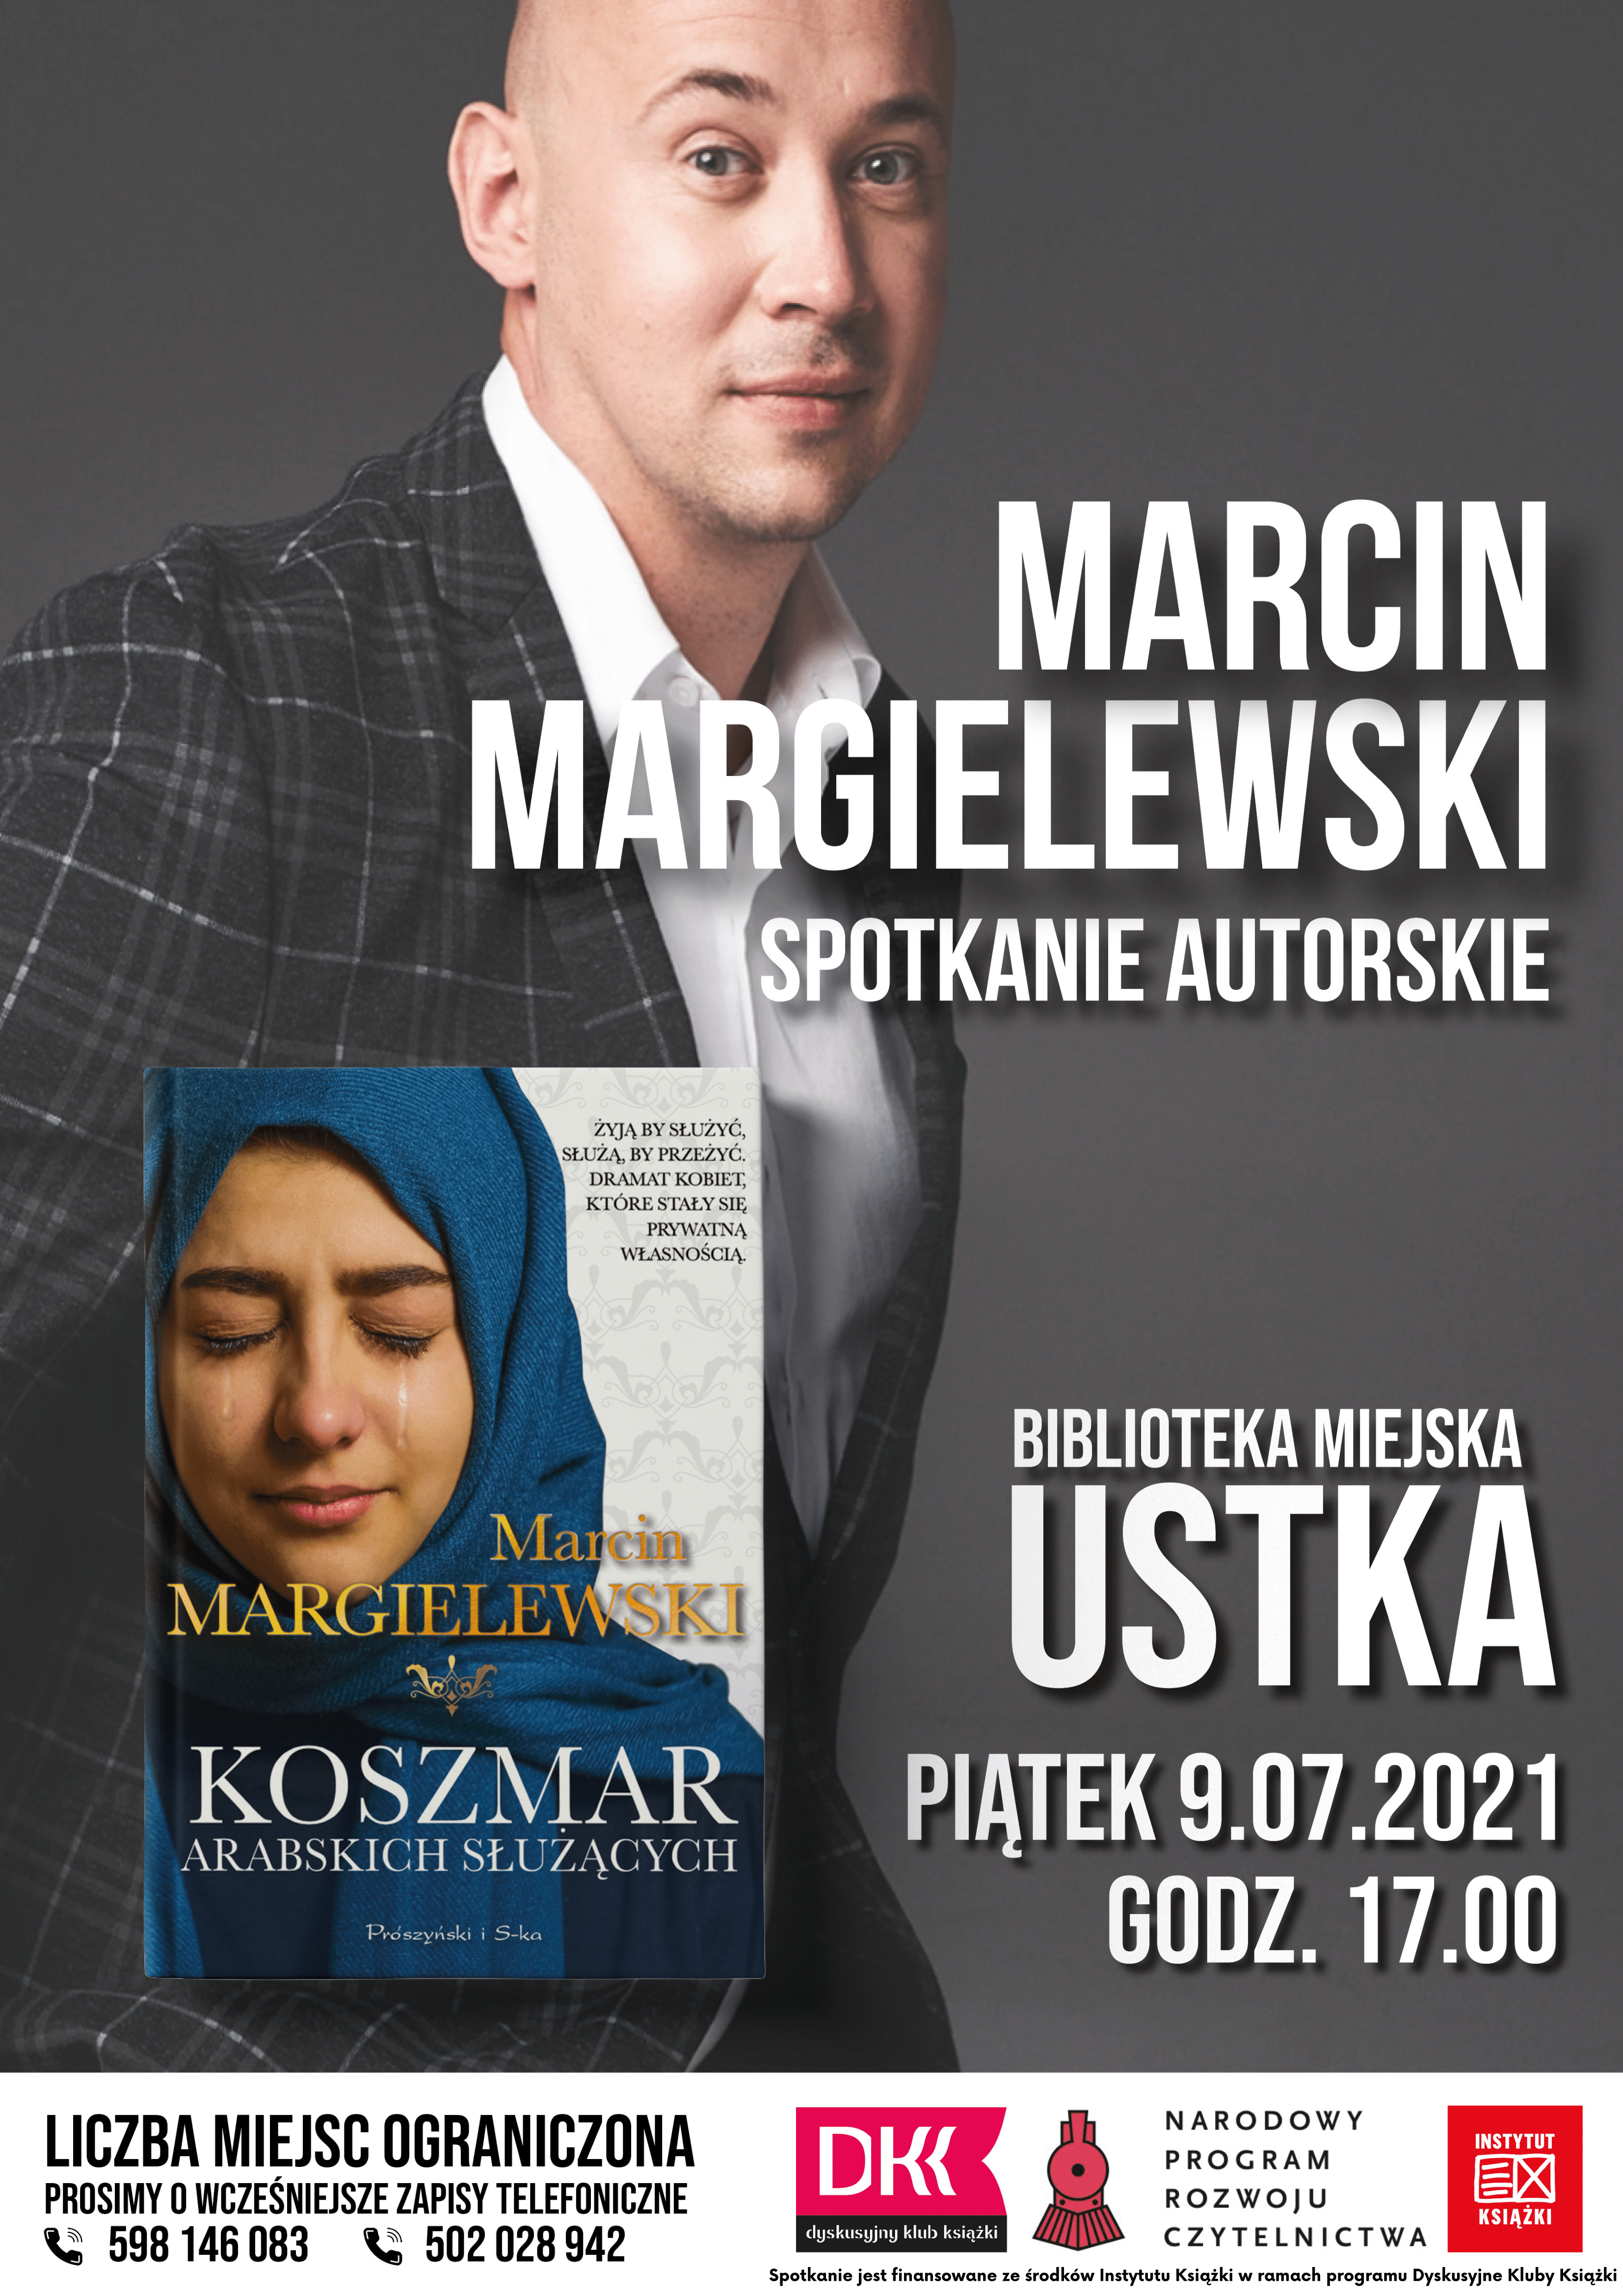 Infografika - spotkanie autorskie z Marcinem Margielewskim w bibliotece 9 lipca 2021 r. o godz. 17